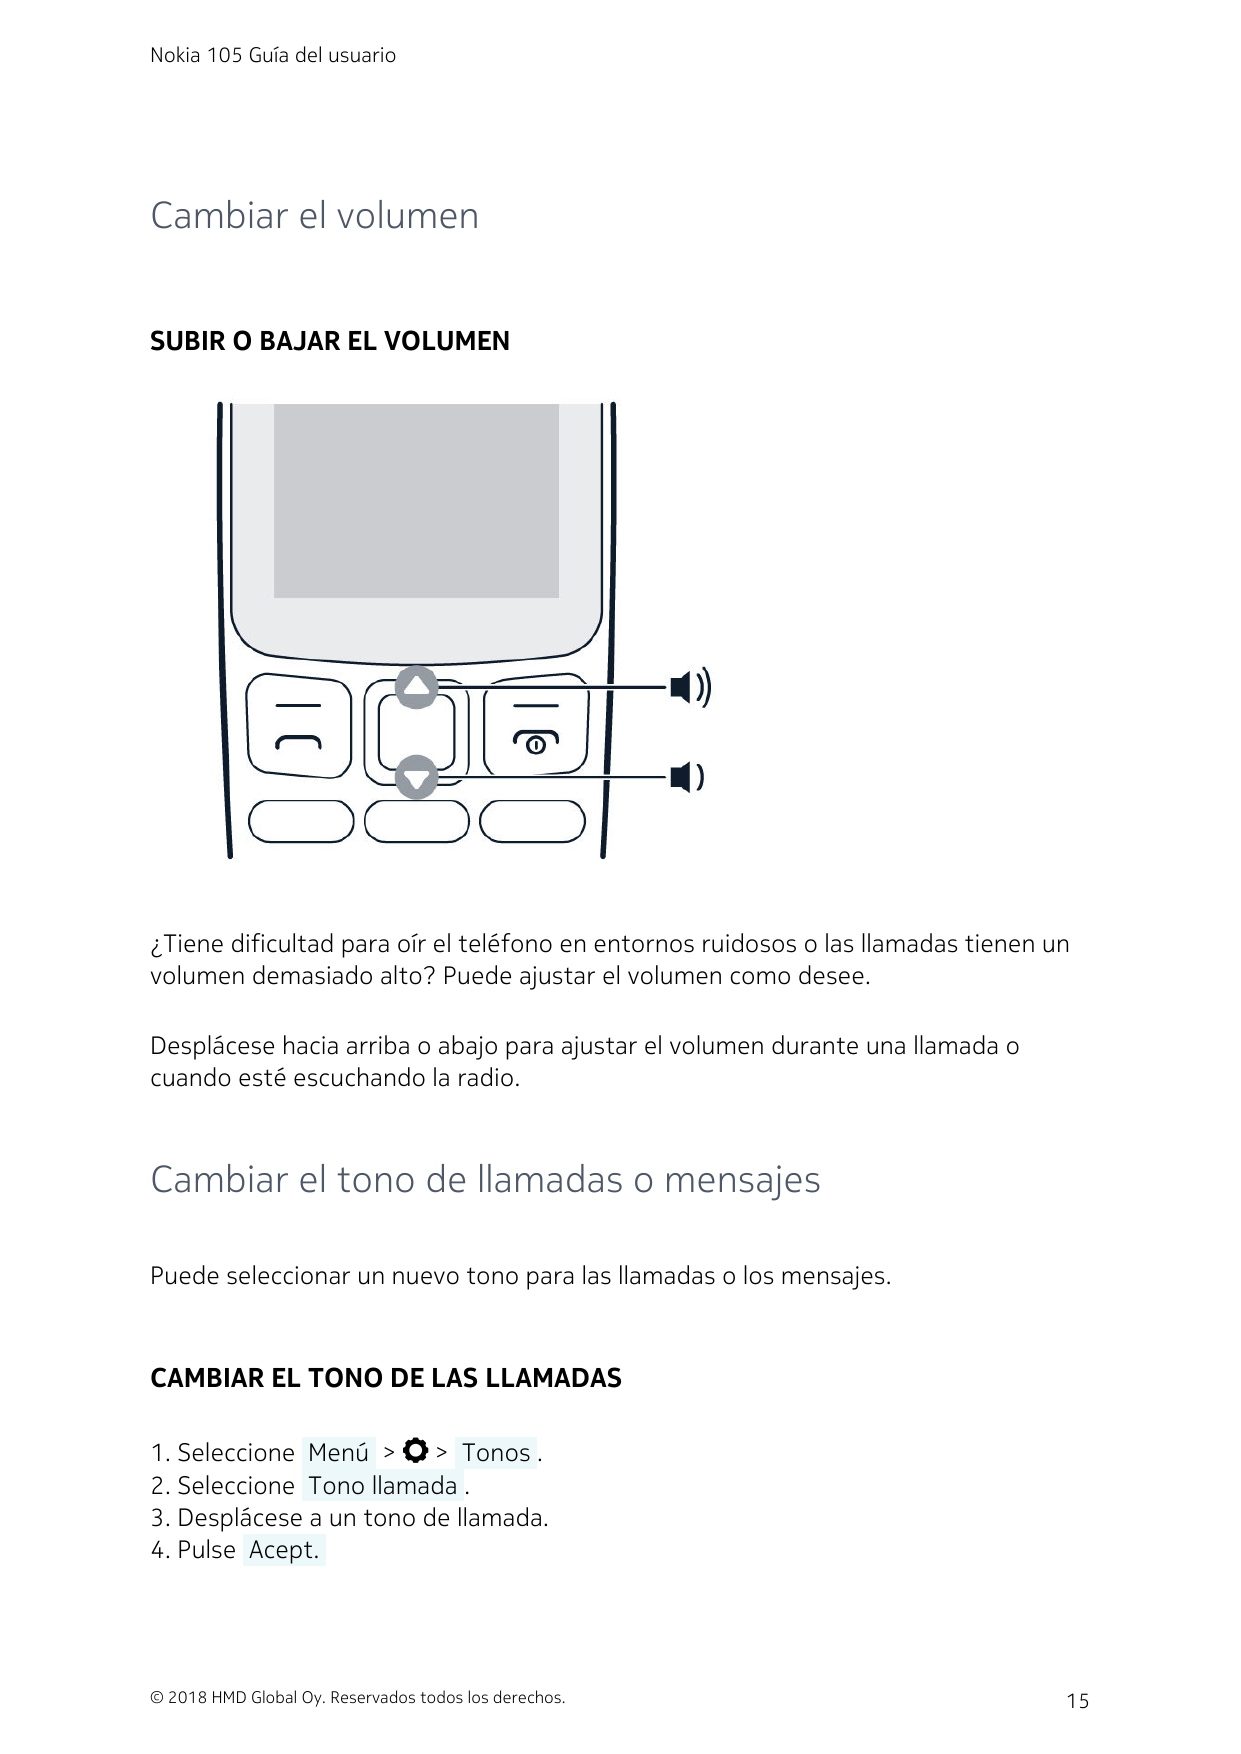 Nokia 105 Guía del usuarioCambiar el volumenSUBIR O BAJAR EL VOLUMEN¿Tiene dificultad para oír el teléfono en entornos ruidosos 